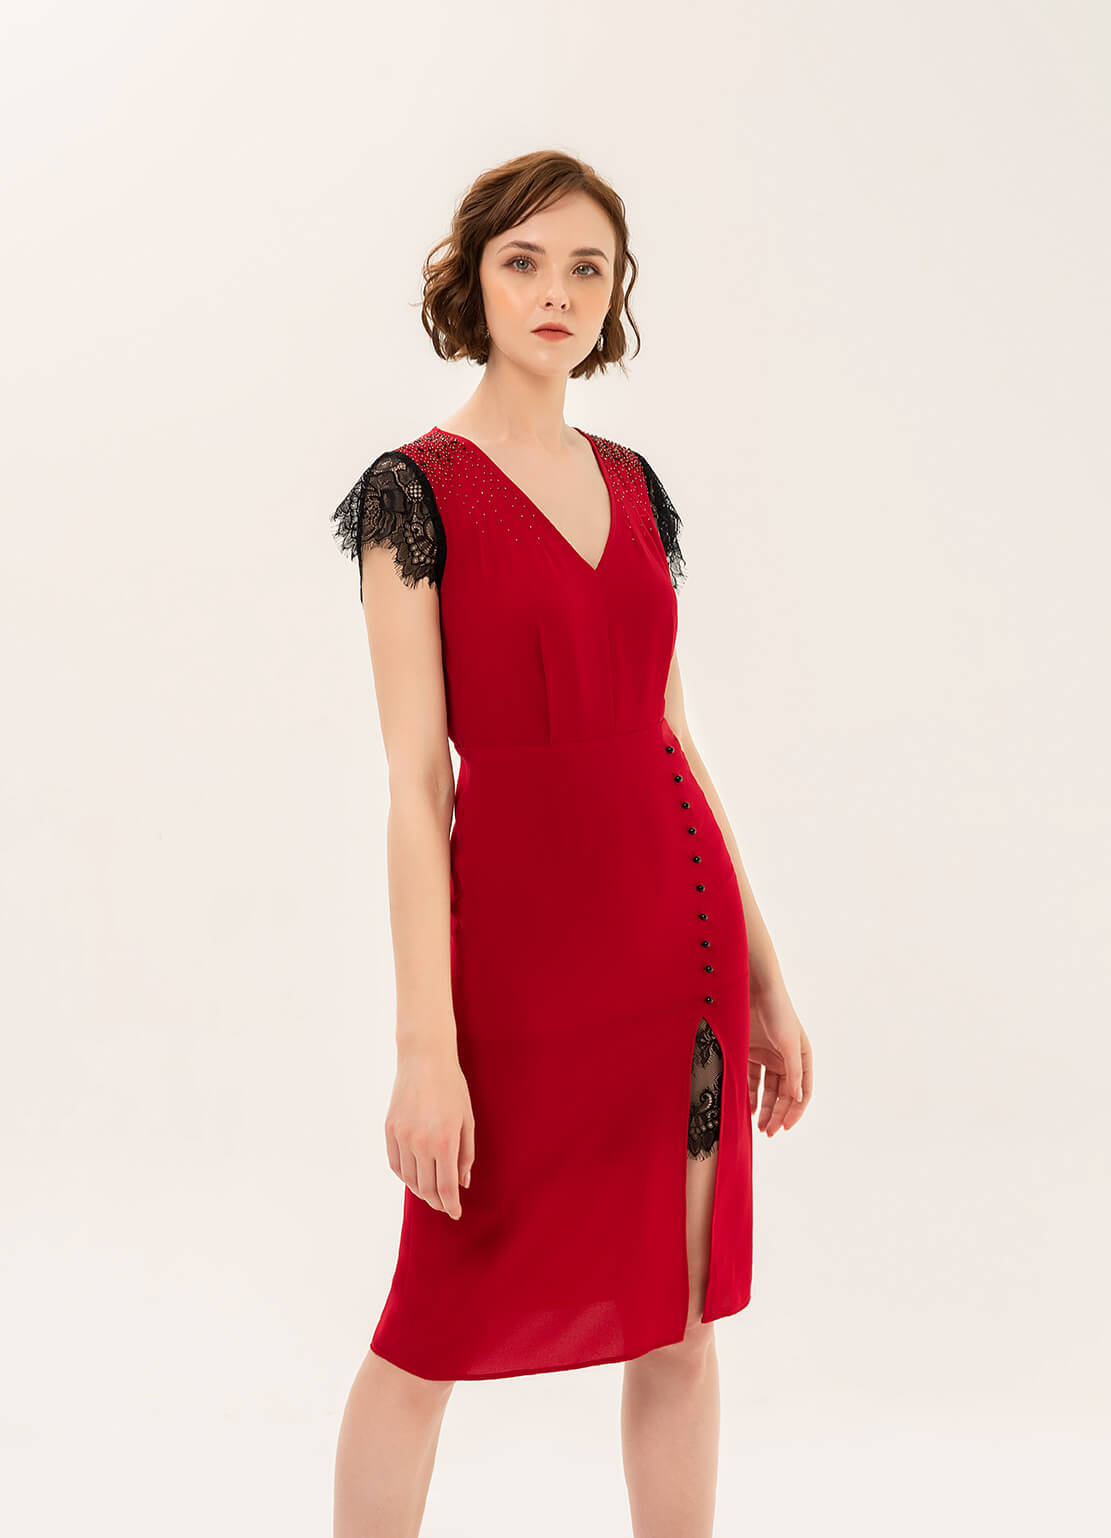 Đầm midi đỏ rất phù hợp với quý cô tuổi 40 bởi nét cổ điển pha lẫn hiện đại làm nên một phong thái tuyệt vời